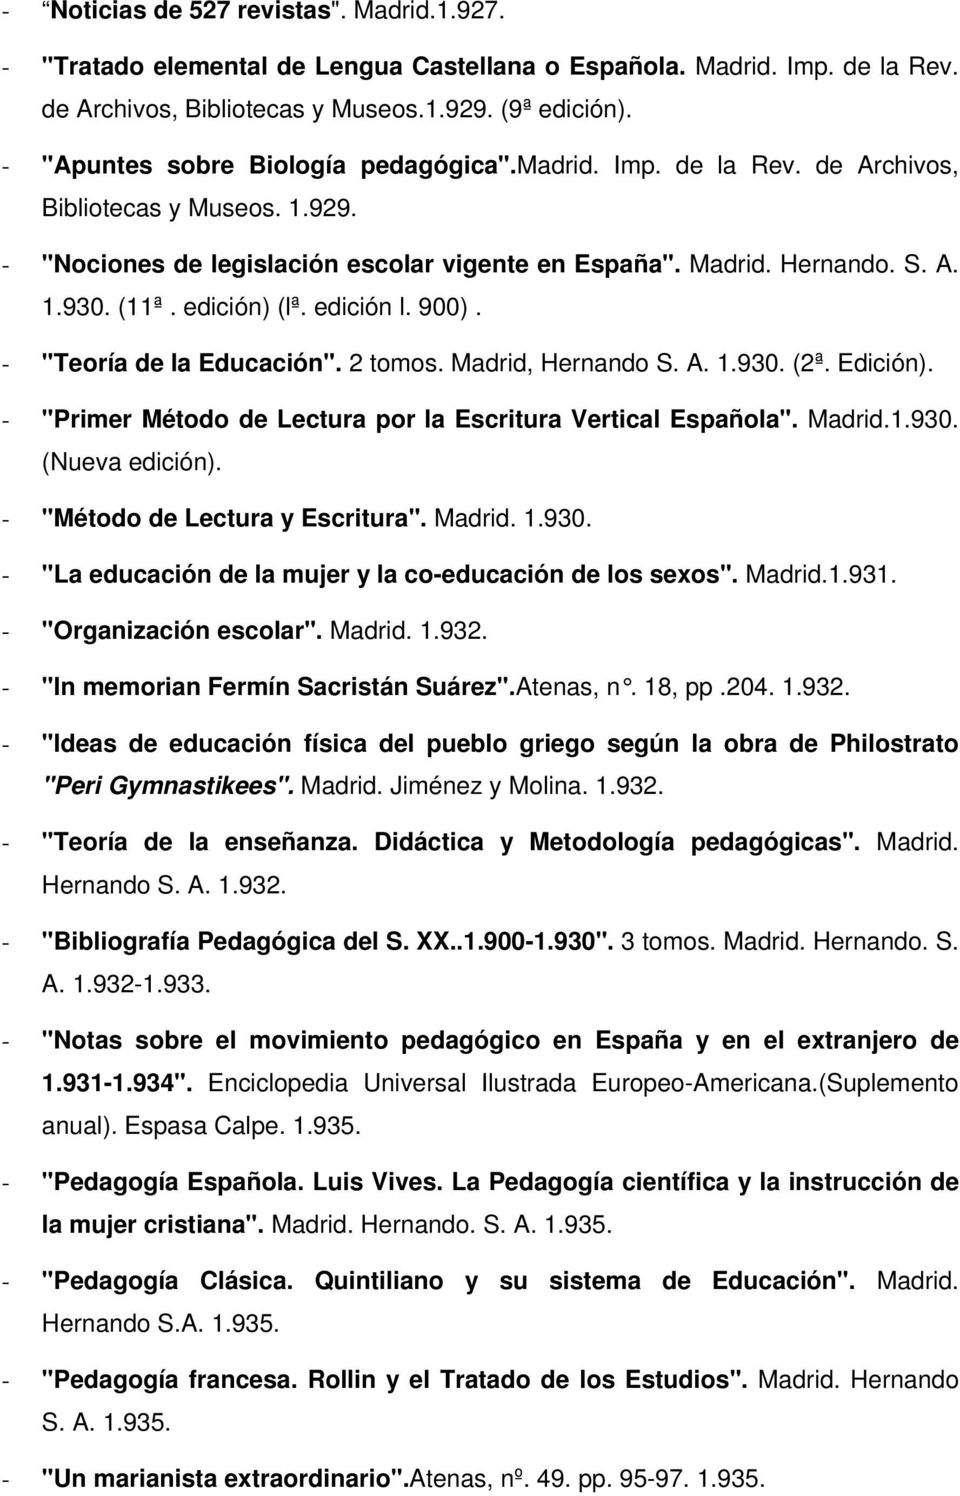 edición) (lª. edición l. 900). - "Teoría de la Educación". 2 tomos. Madrid, Hernando S. A. 1.930. (2ª. Edición). - "Primer Método de Lectura por la Escritura Vertical Española". Madrid.1.930. (Nueva edición).